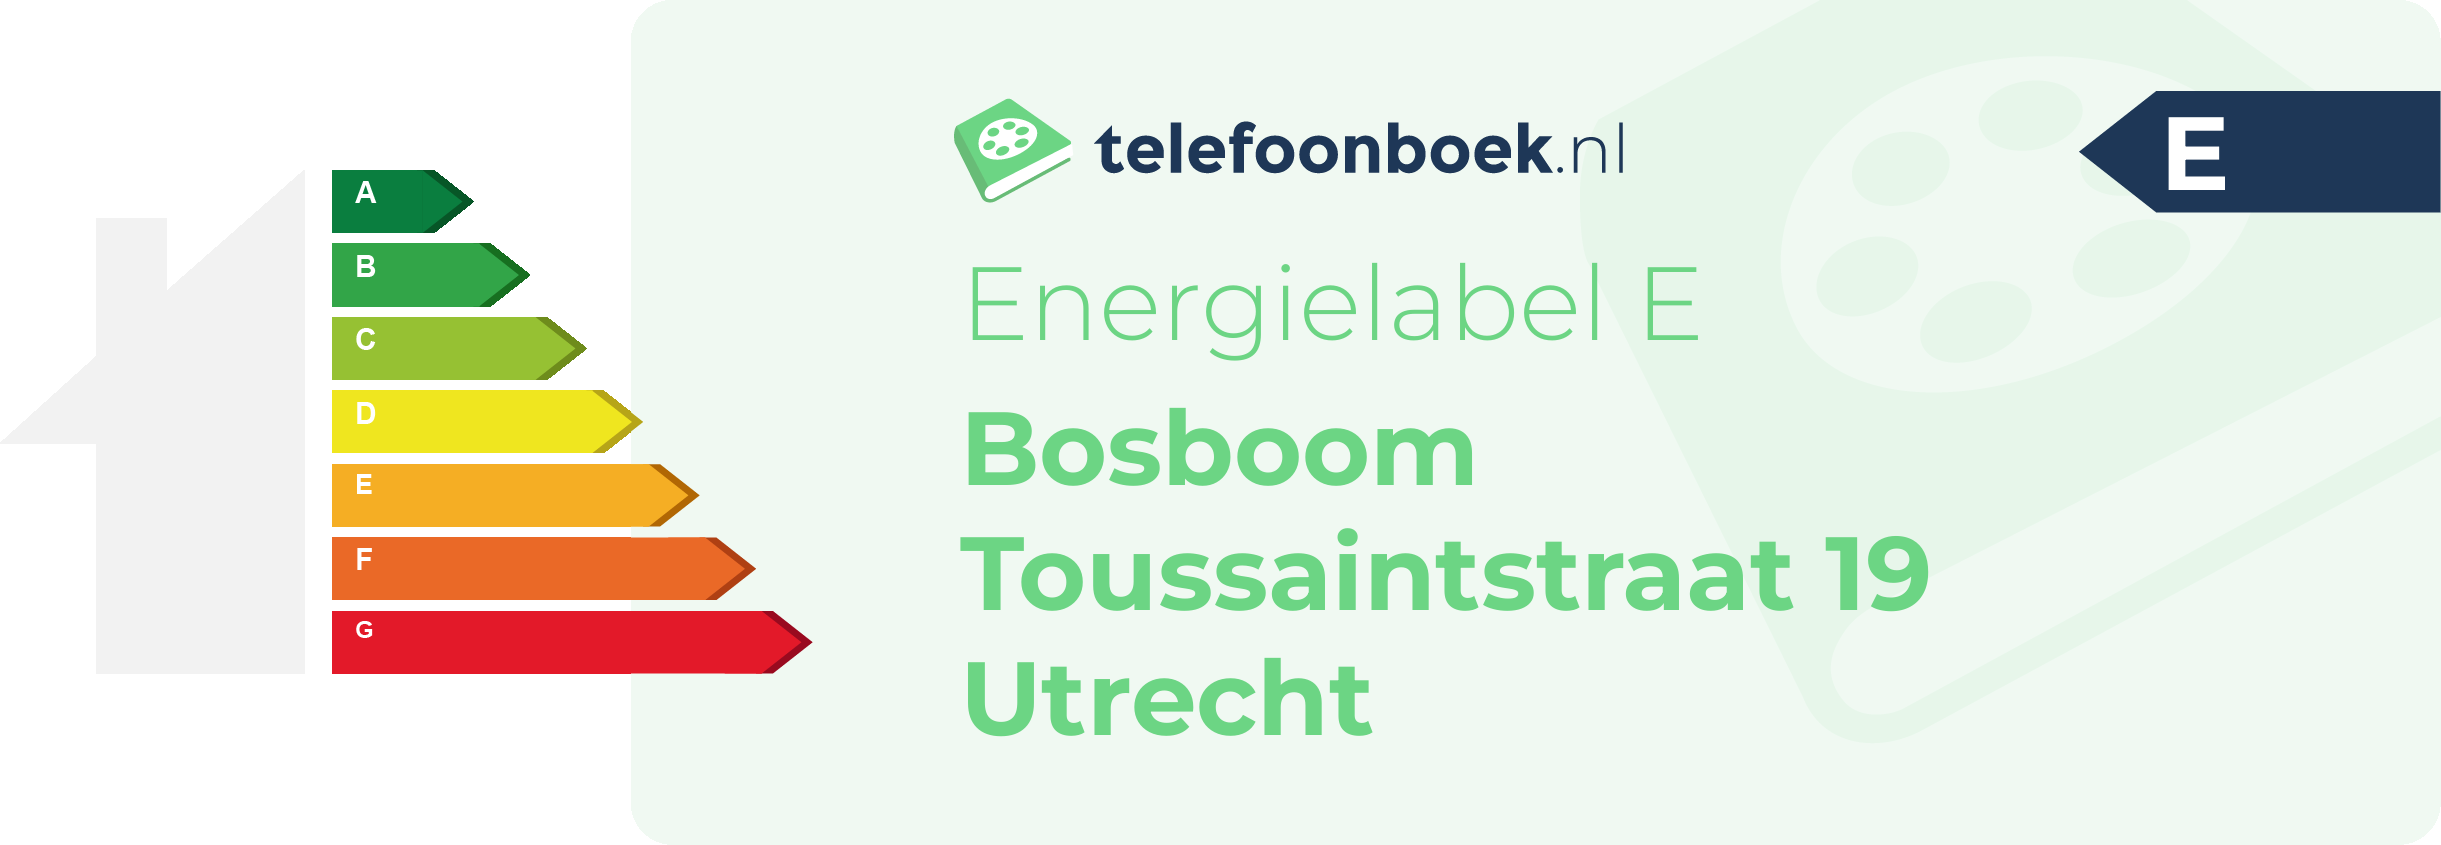 Energielabel Bosboom Toussaintstraat 19 Utrecht